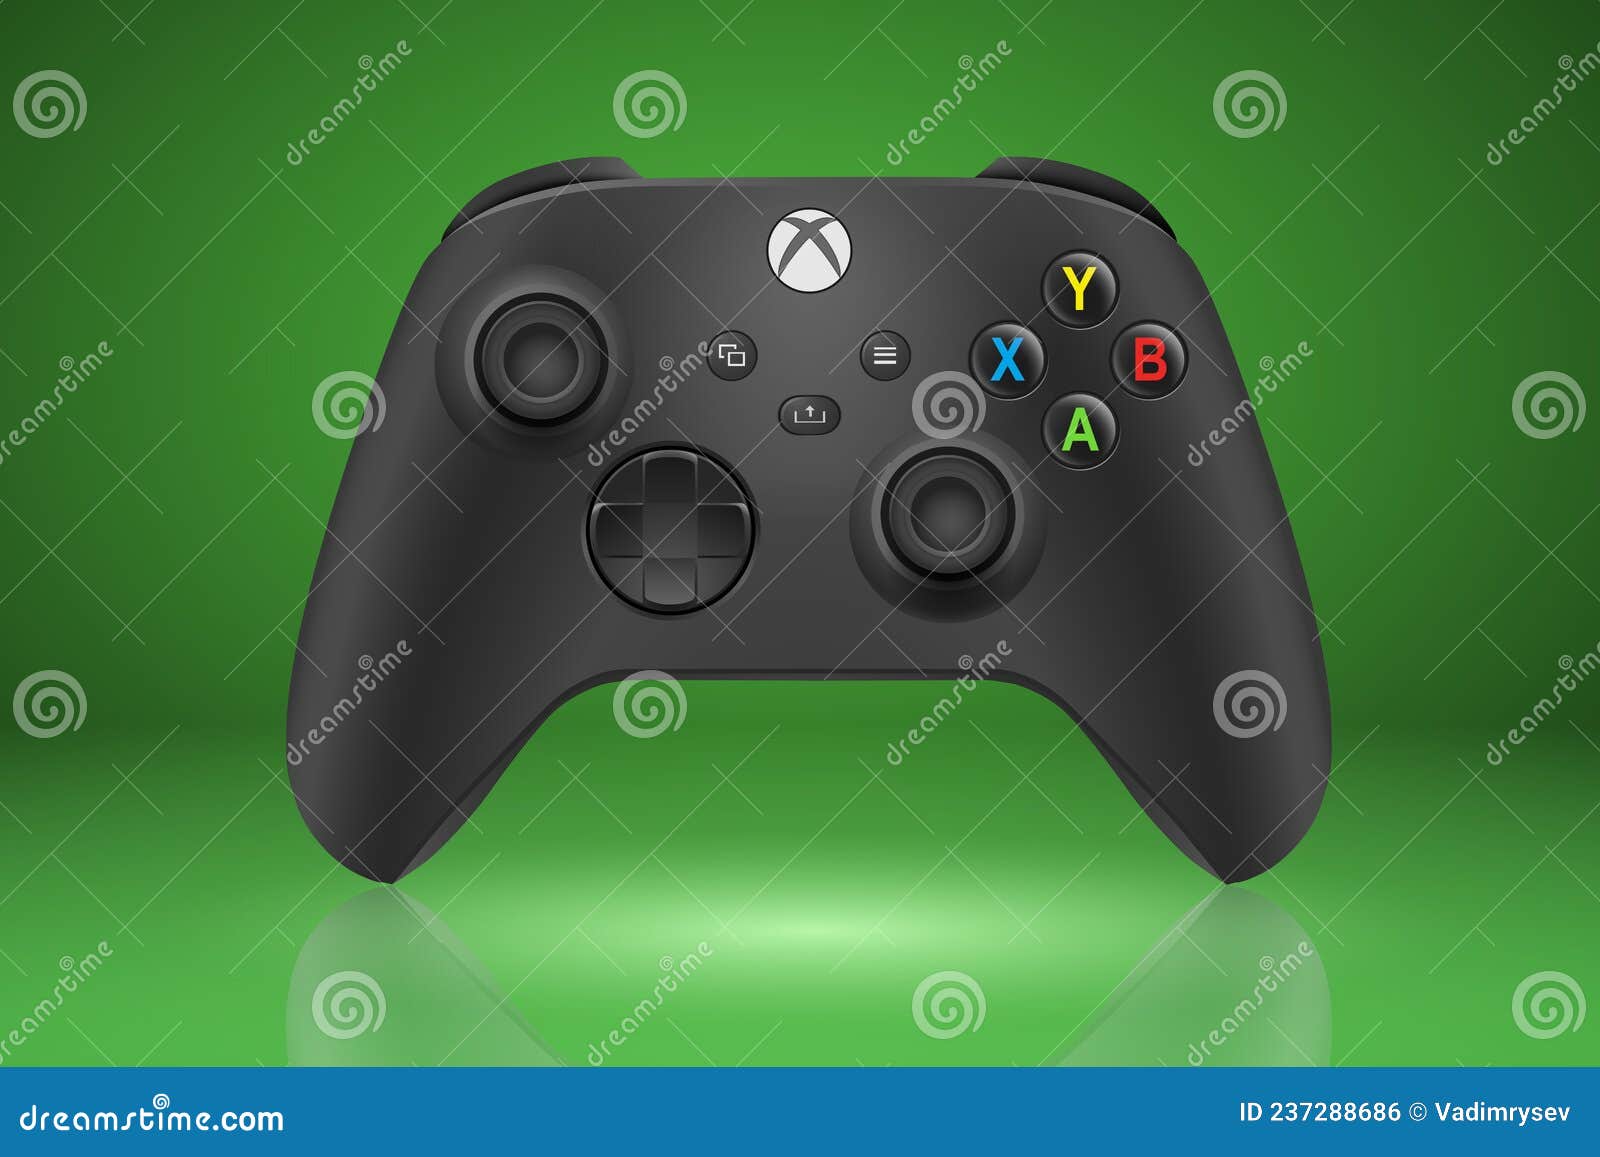 Xbox Series X: Sự bất ngờ đến từ Microsoft. Hệ máy chơi game mới nhất của hãng đã chính thức được giới thiệu và mang đến những trải nghiệm game vô cùng đáng kinh ngạc. Hãy cùng xem hình ảnh liên quan để tận hưởng không gian game đỉnh cao mà Xbox Series X mang lại.